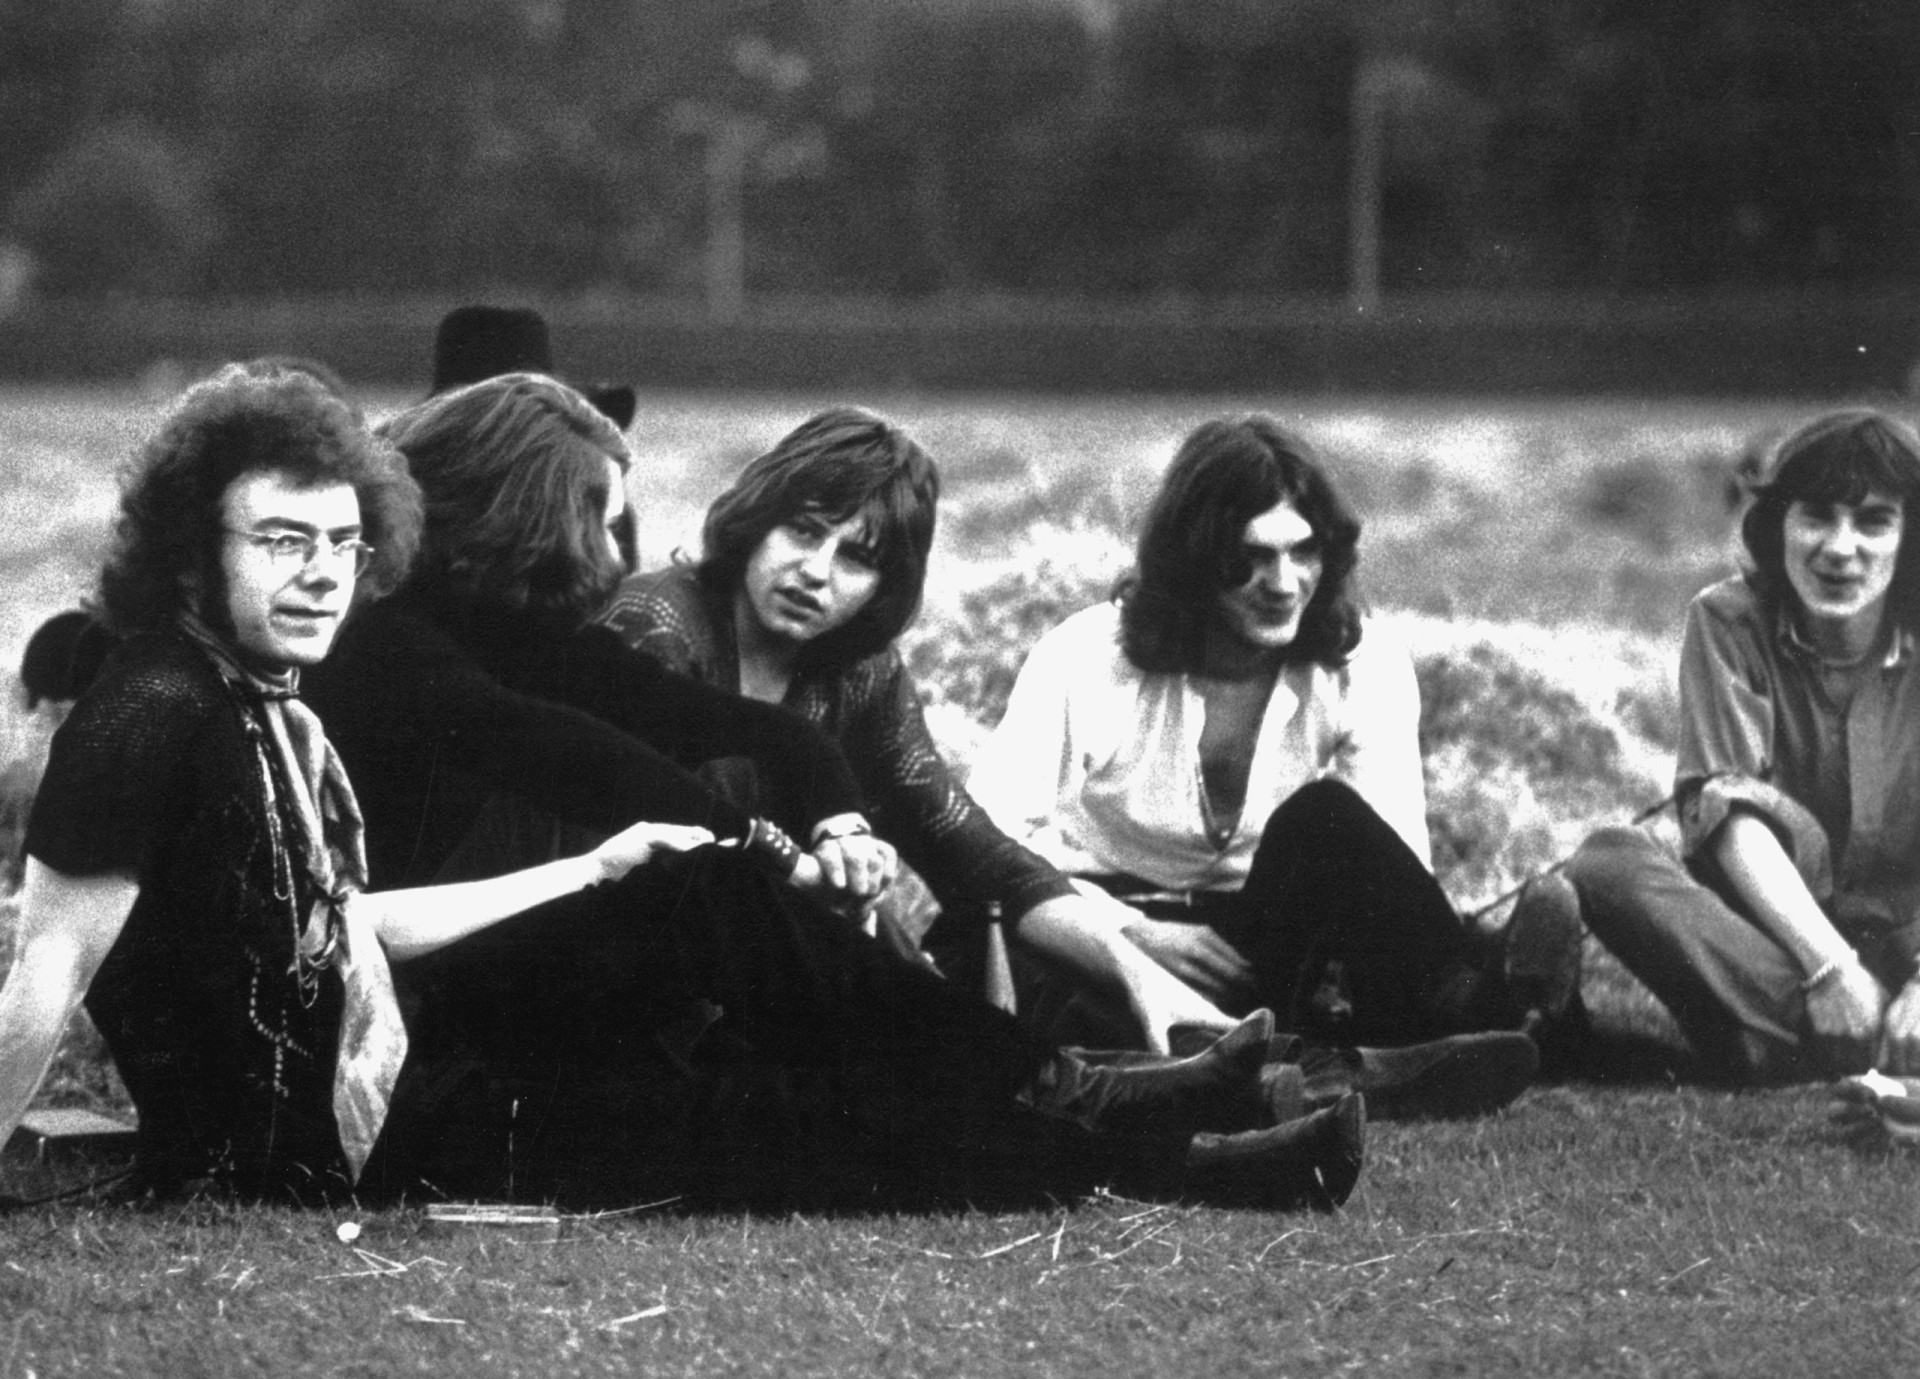 <p>King Crimson, 1968 von Robert Fripp, Michael Giles, Greg Lake (später bei ELP), Ian McDonald und dem Texter Peter Sinfield gegründet, kombinierten vielschichtige Elemente aus Klassik, Jazz und Volksmusik, die die Grundlage für "In the Court of the Crimson King" bildeten. Das 1969 erschienene Album ist ein weiterer Meilenstein im Progrock-Kanon und sicherlich eines der einflussreichsten.</p><p>Sie können auch mögen:<a href="https://de.starsinsider.com/n/314798?utm_source=msn.com&utm_medium=display&utm_campaign=referral_description&utm_content=545349"> Fanliebe: Diese Promis heirateten ihre Fans</a></p>